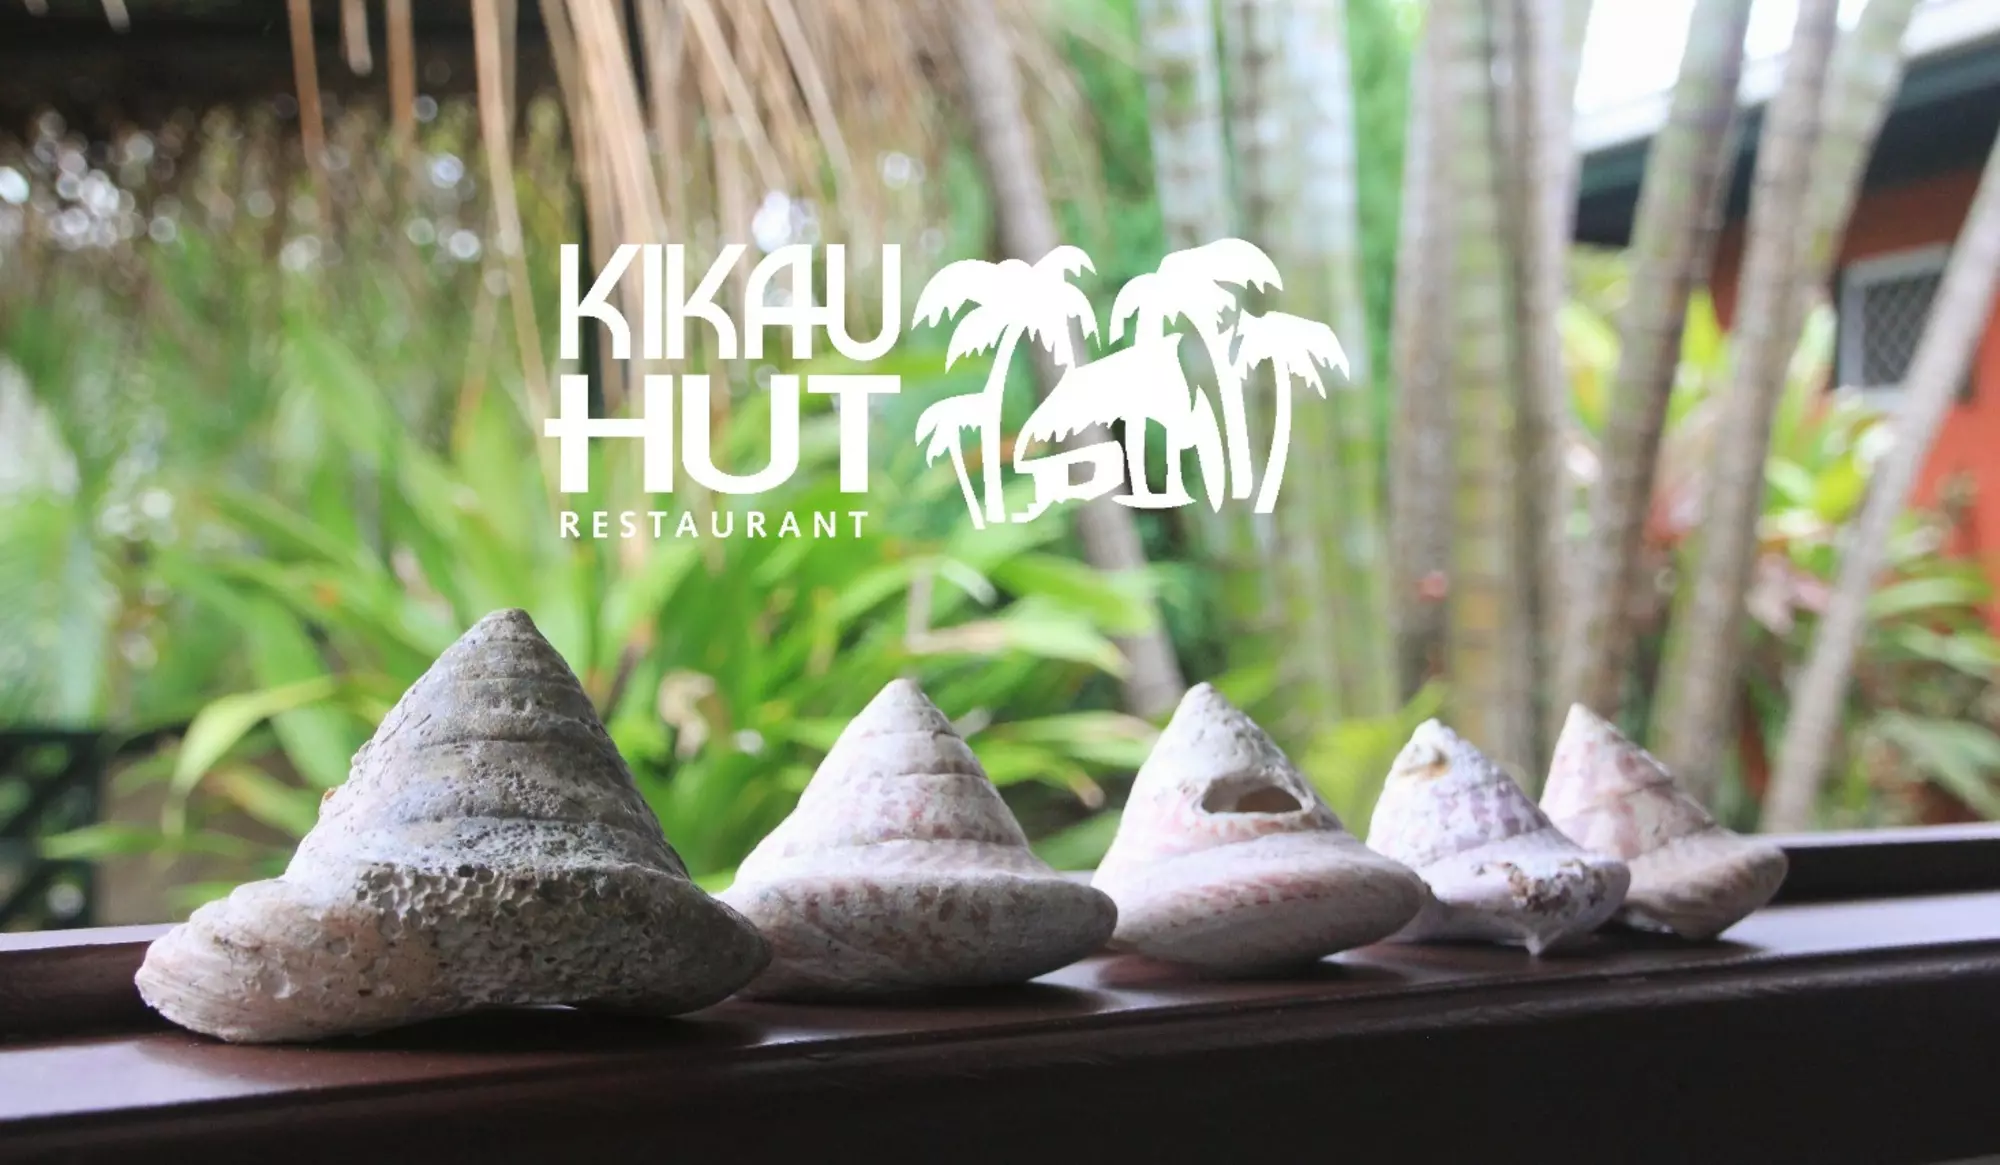 Kikau Hut Restaurant